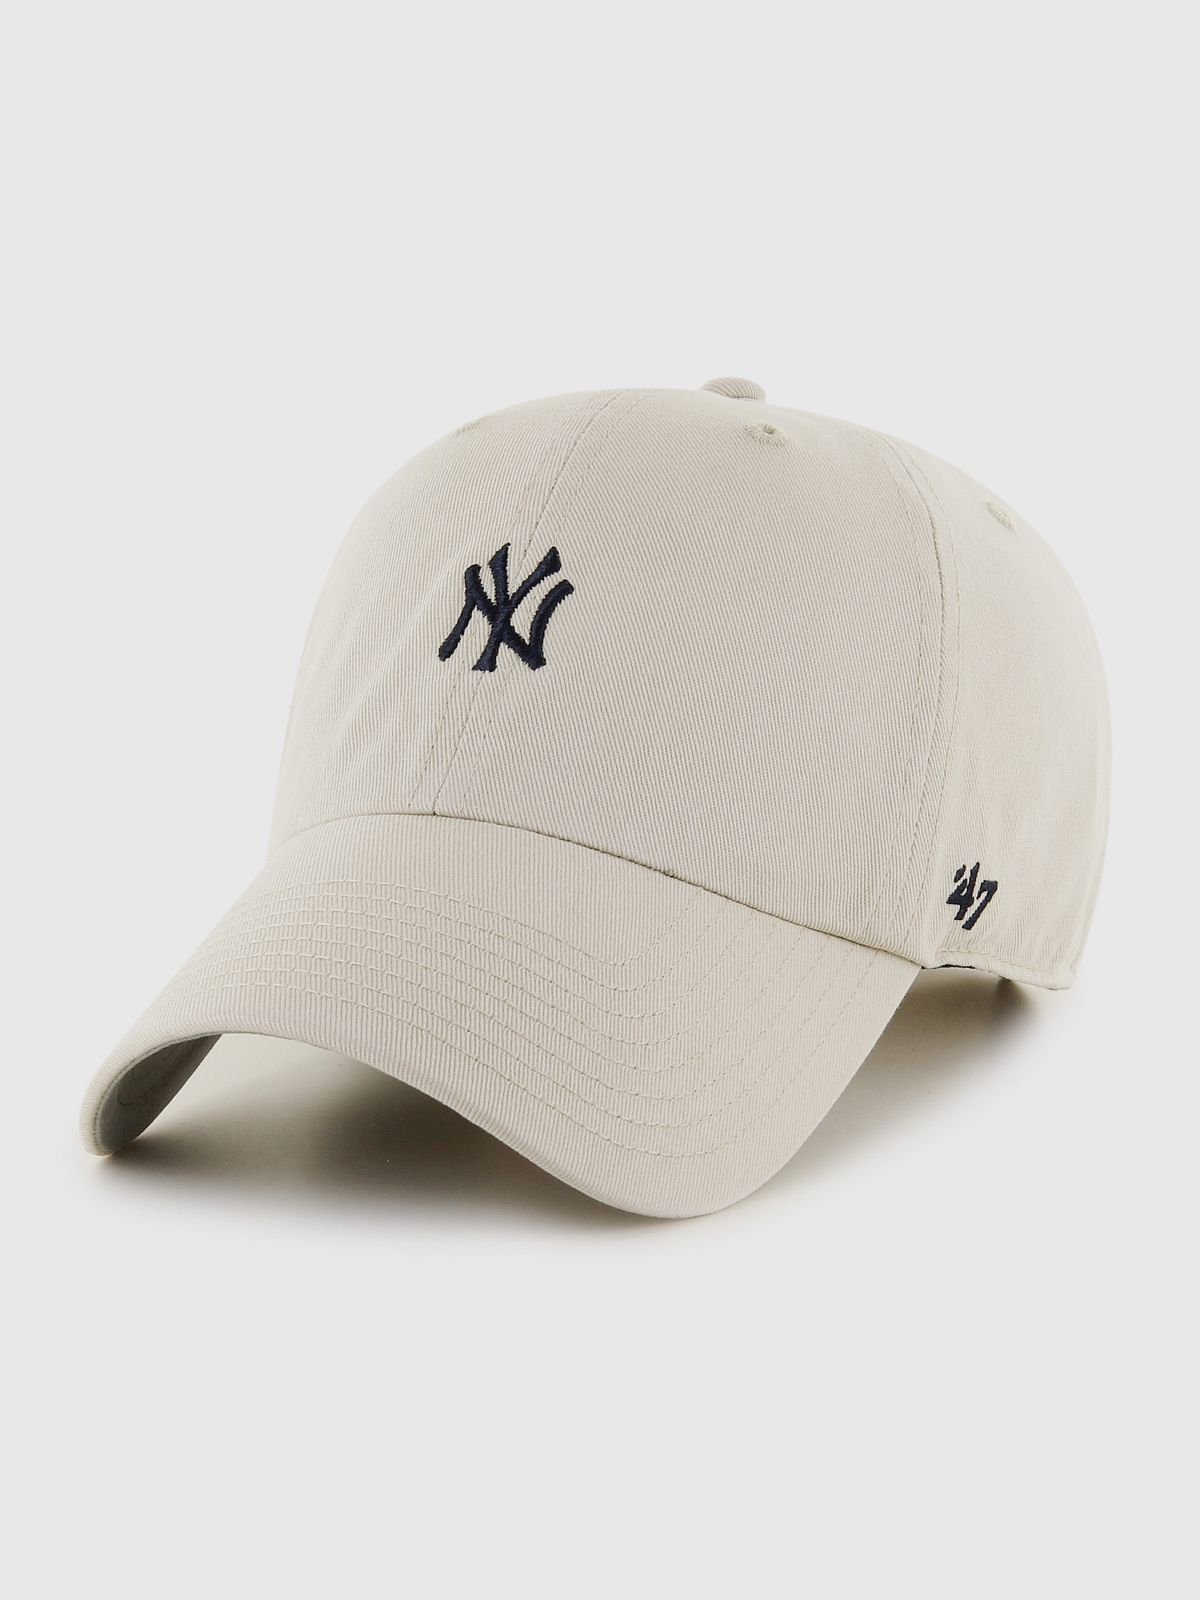  כובע מצחייה עם רקמת לוגו / יוניסקס של BRAND 47